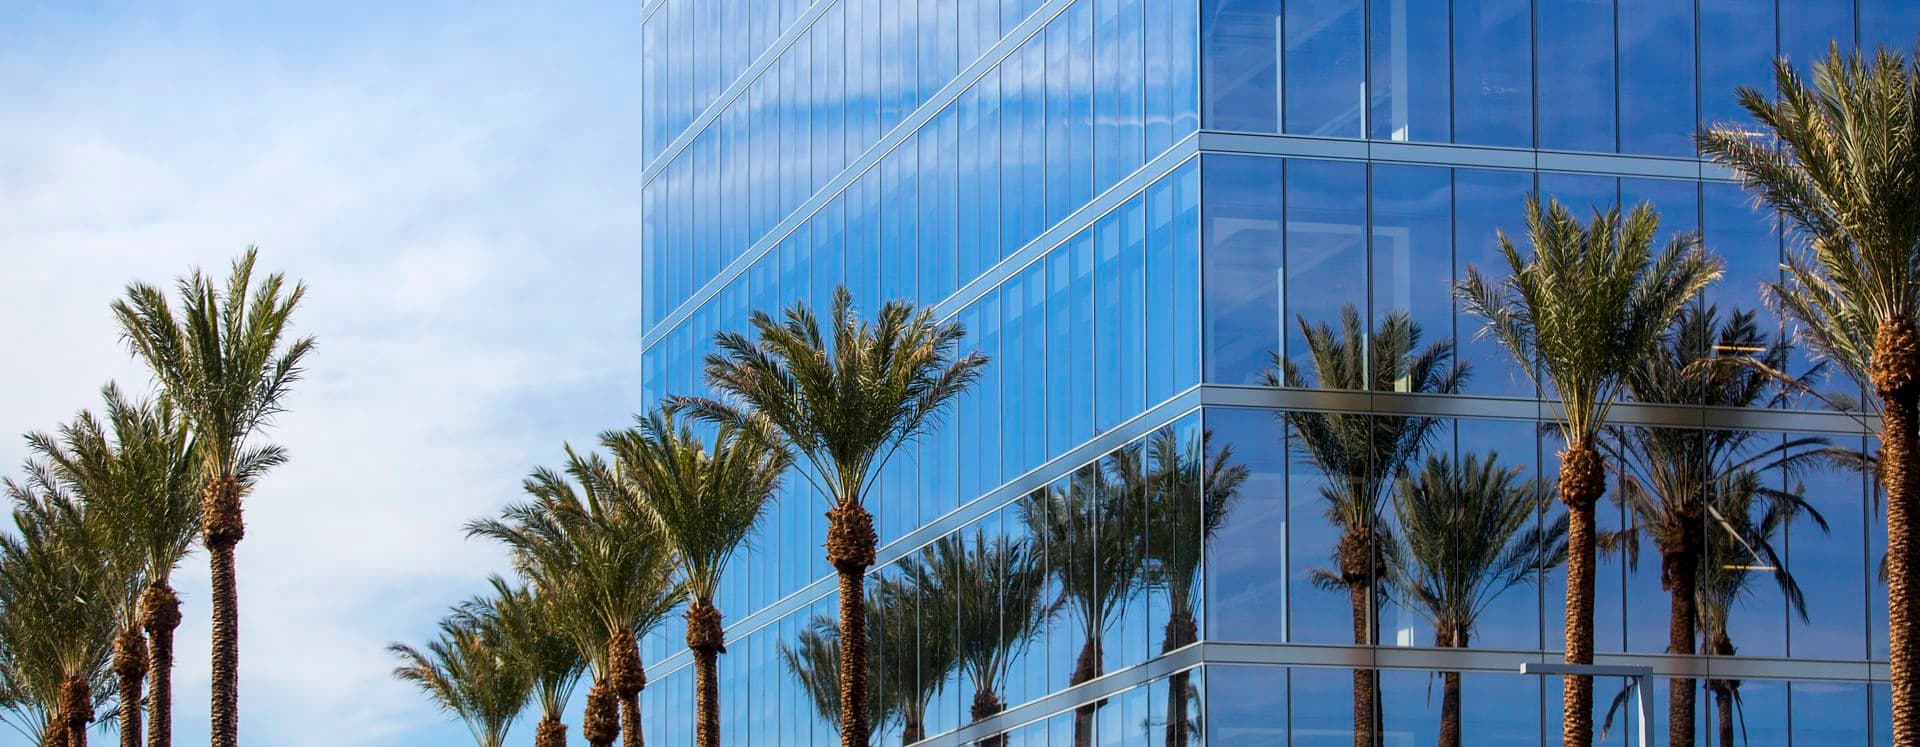 Exterior views of 200 Spectrum Center office building in Irvine Spectrum. Lamb 2016.